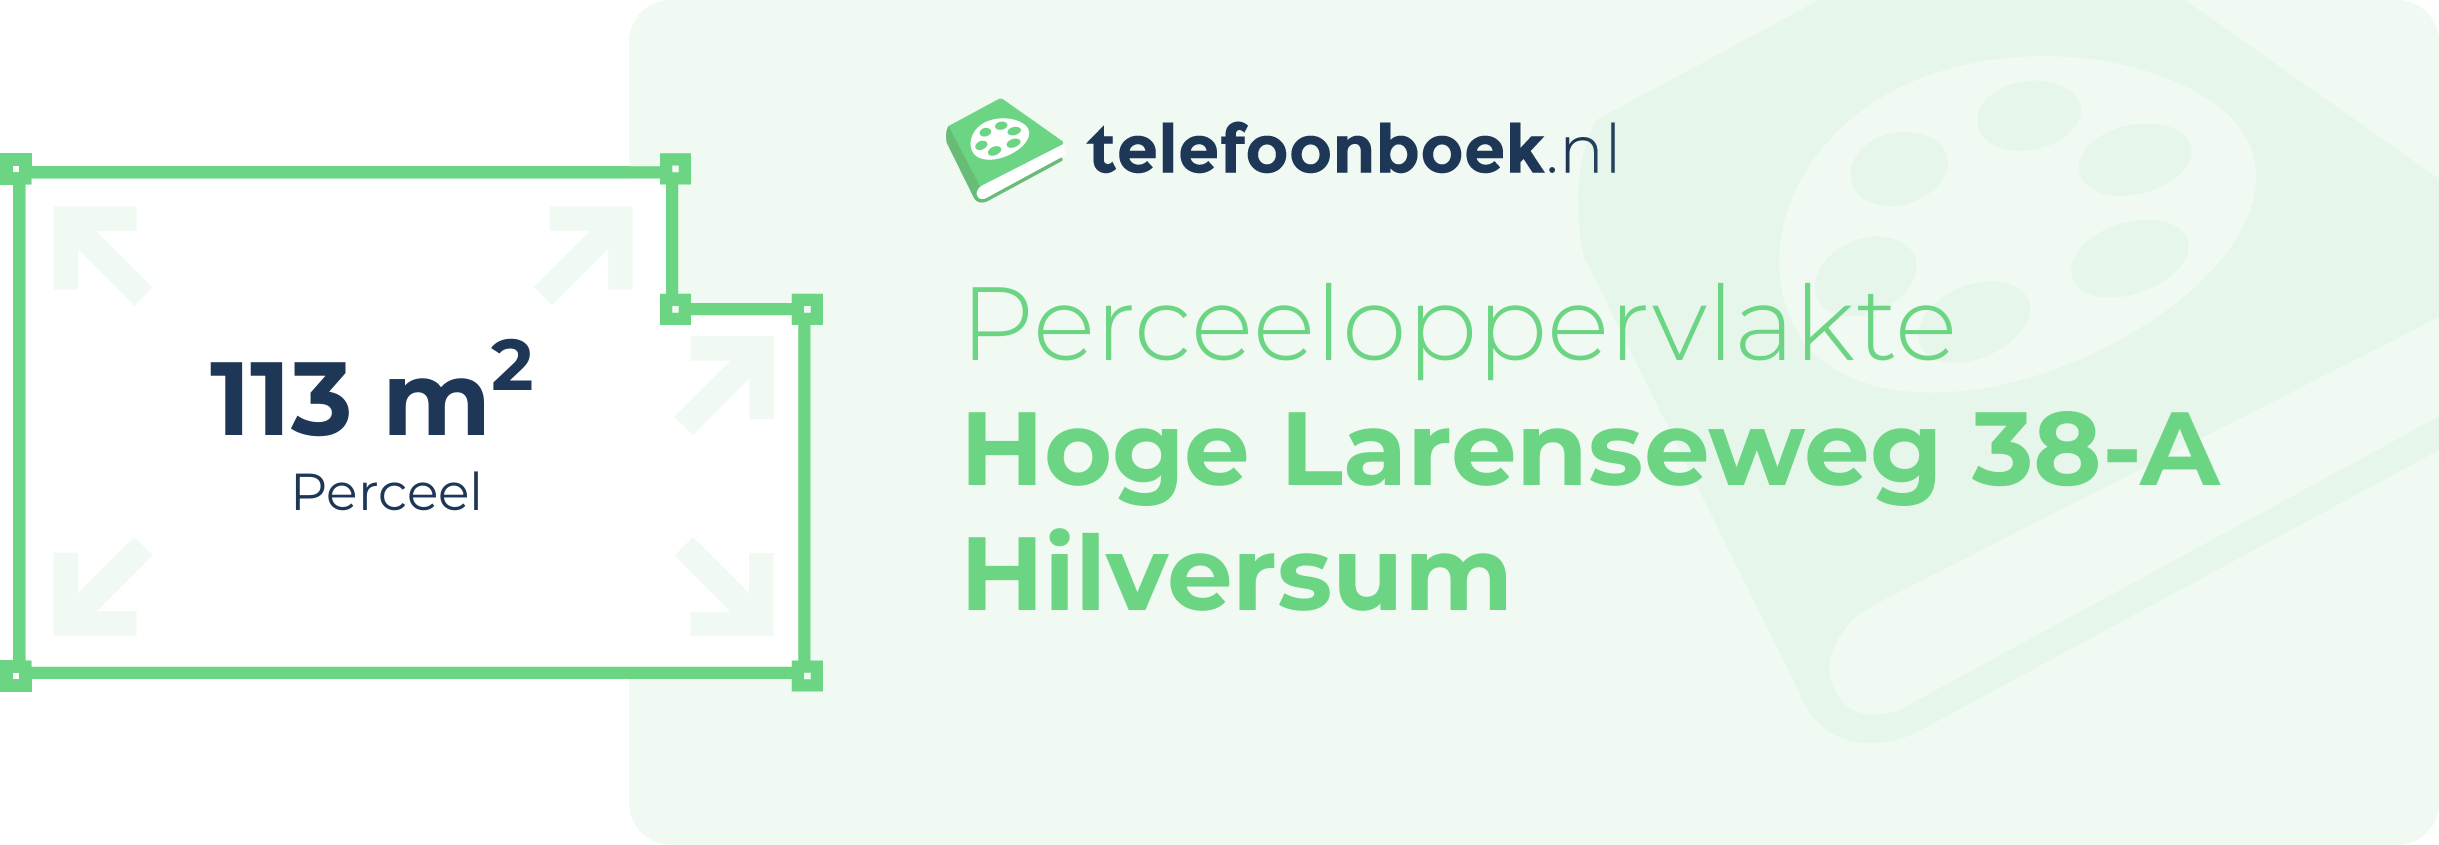 Perceeloppervlakte Hoge Larenseweg 38-A Hilversum